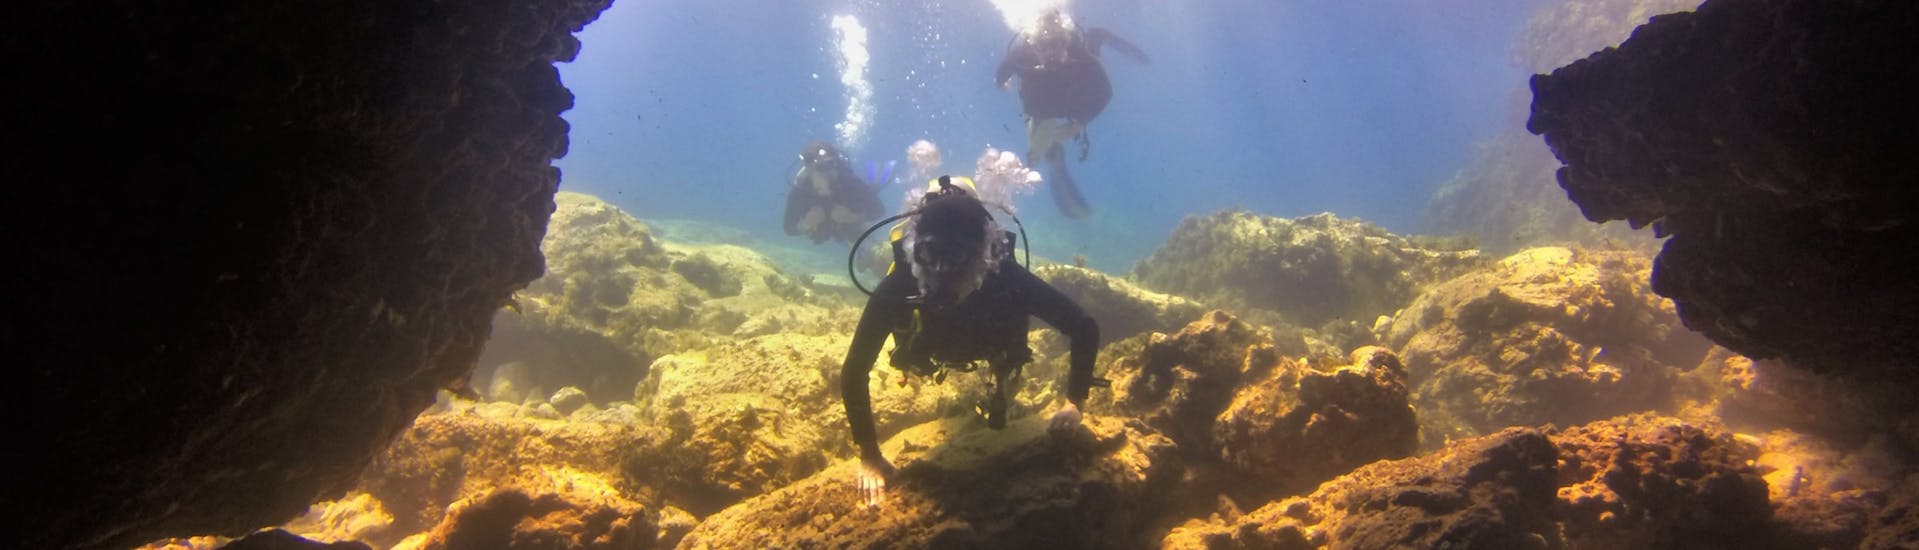 Plongée d'exploration à Paralimni pour Plongeurs certifiés.